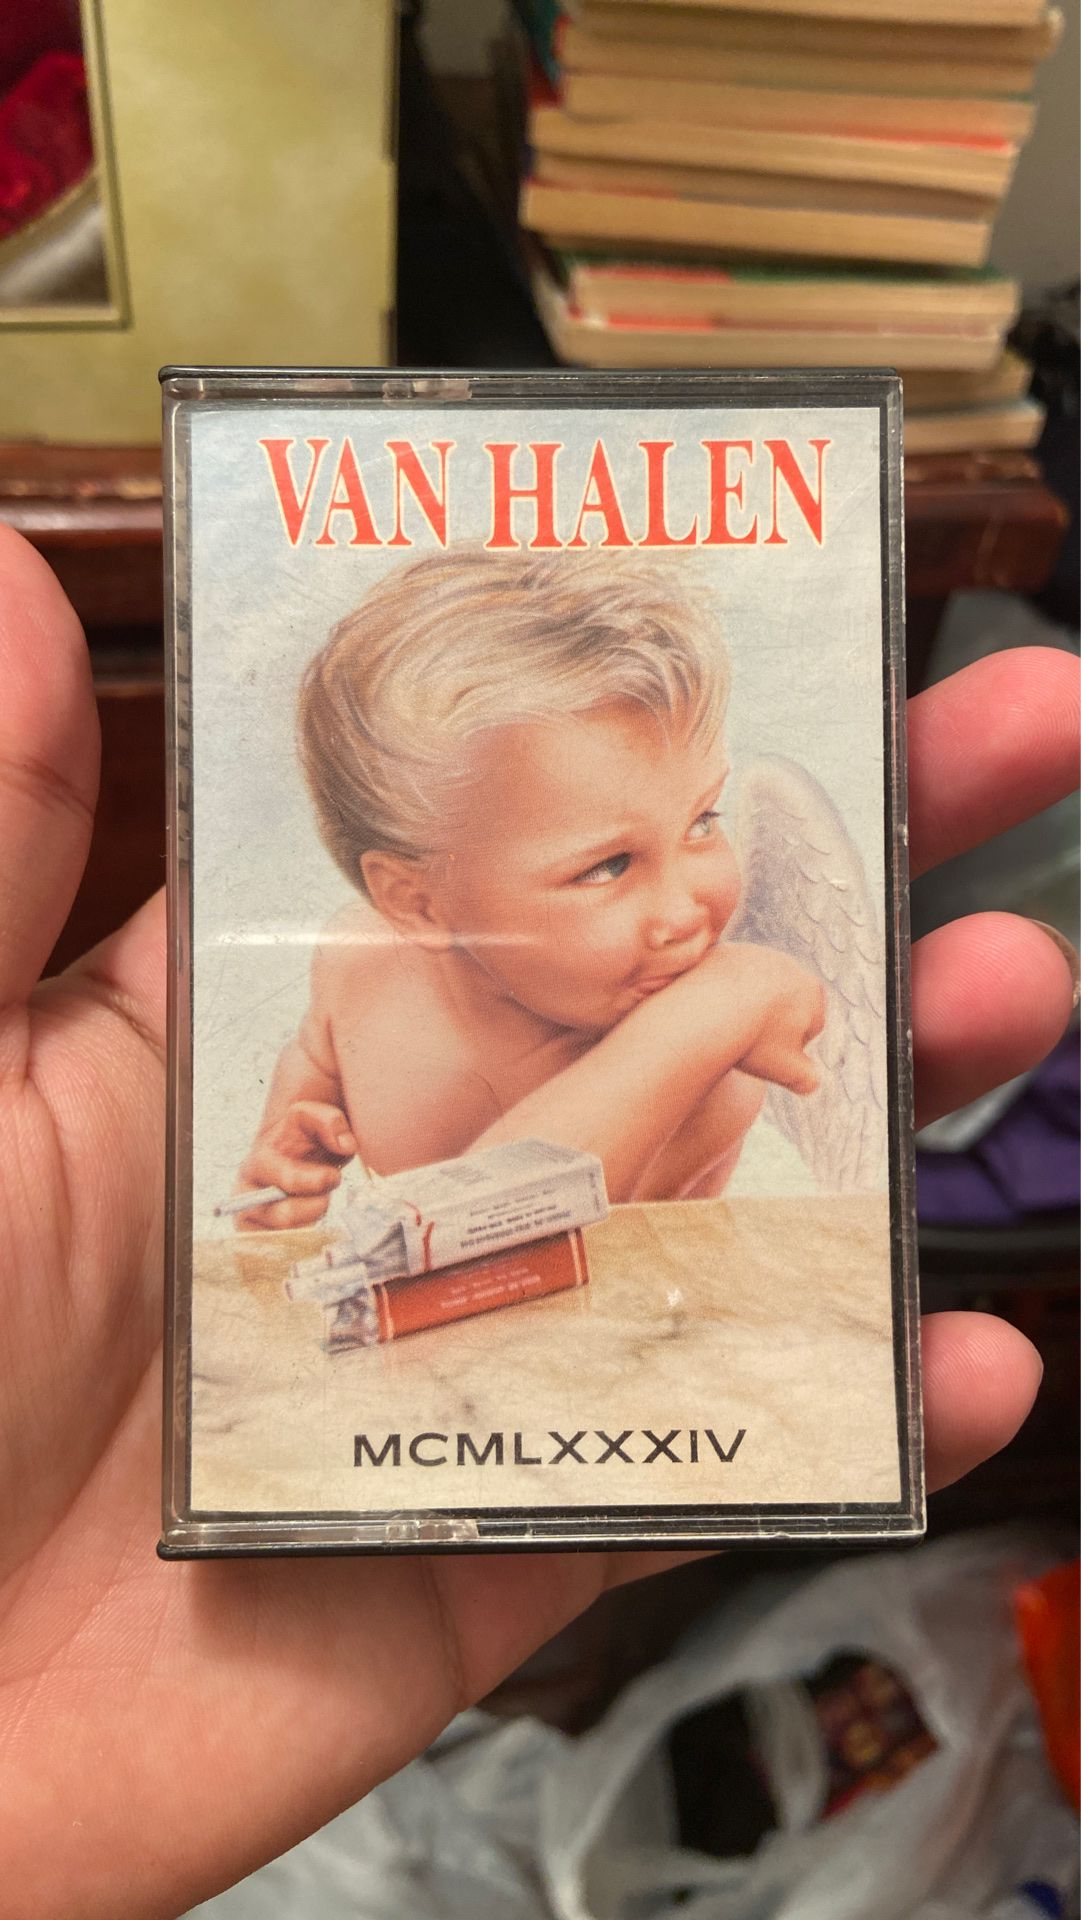 Van Halen 1984 cassette tape